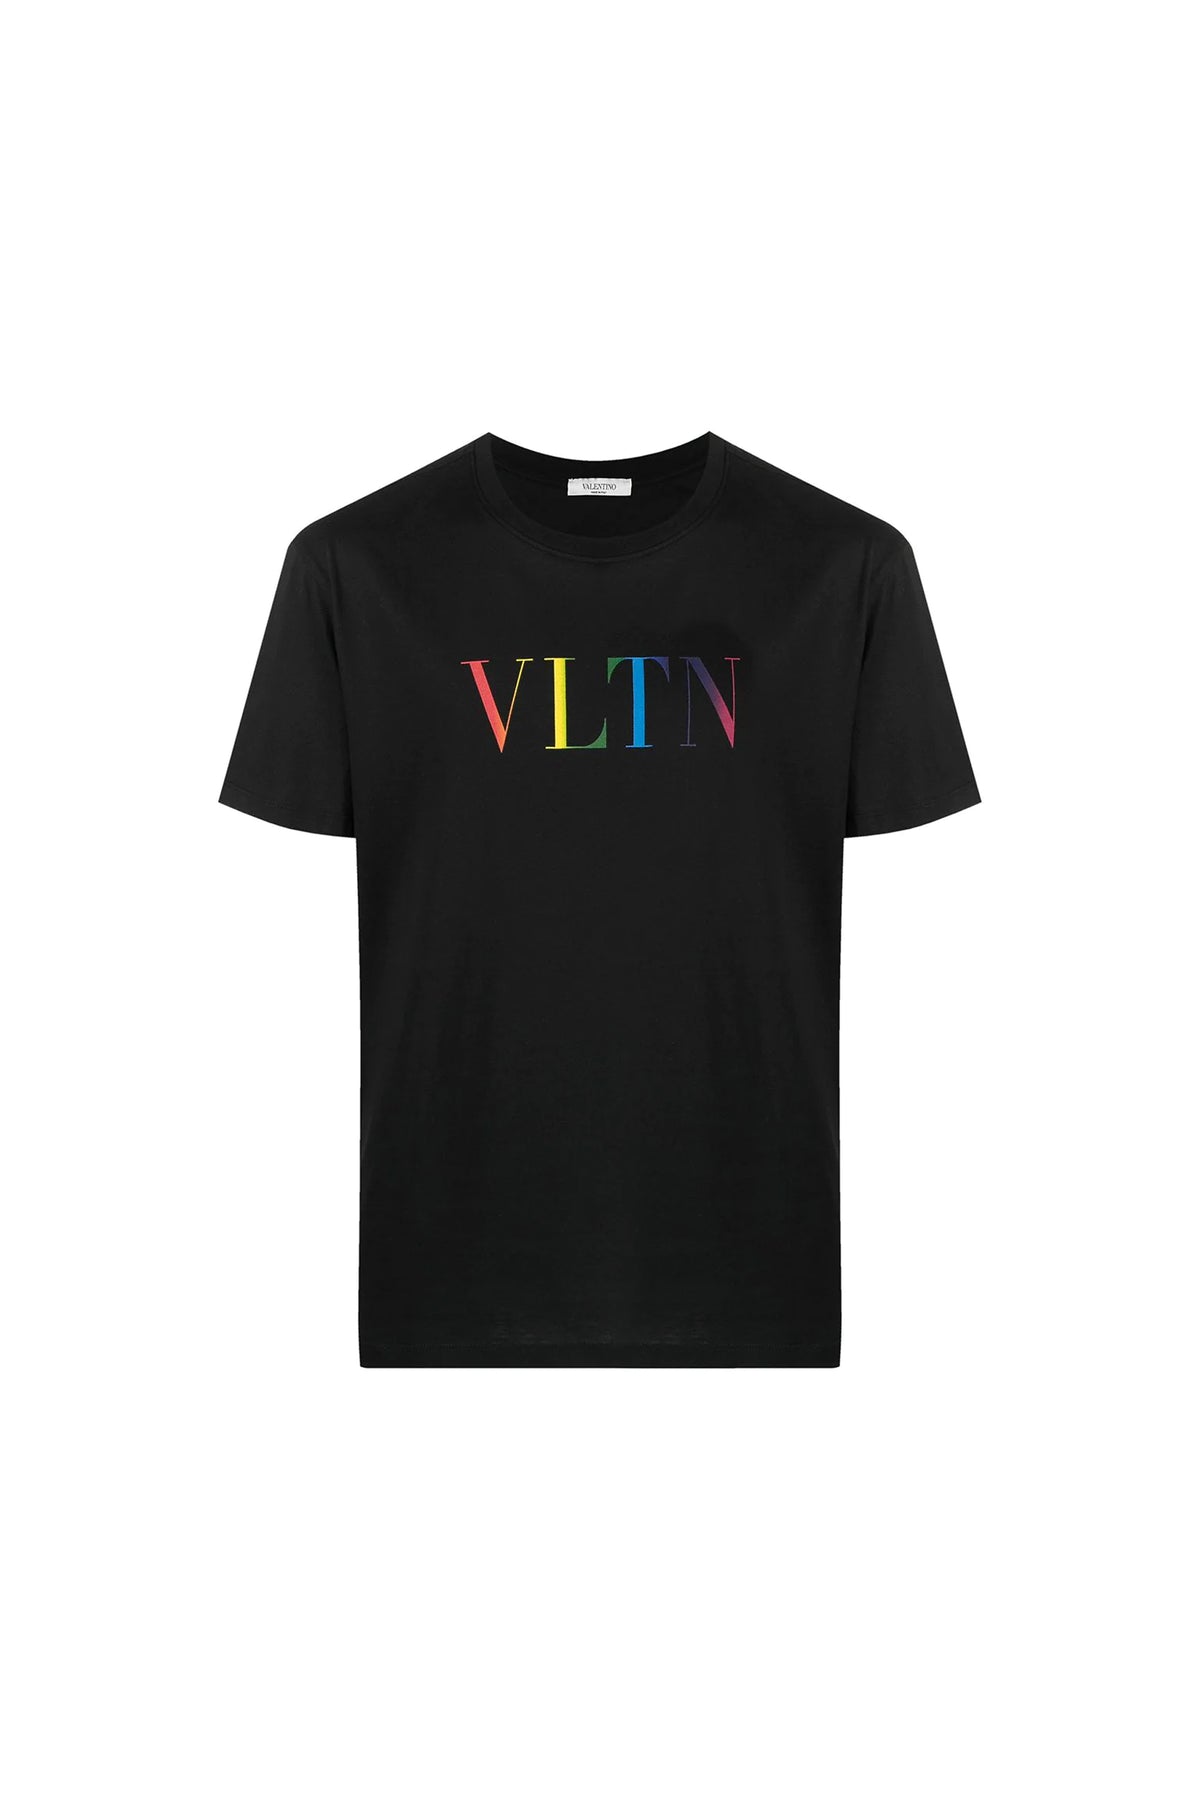 Valentino VLTN print T-shirt